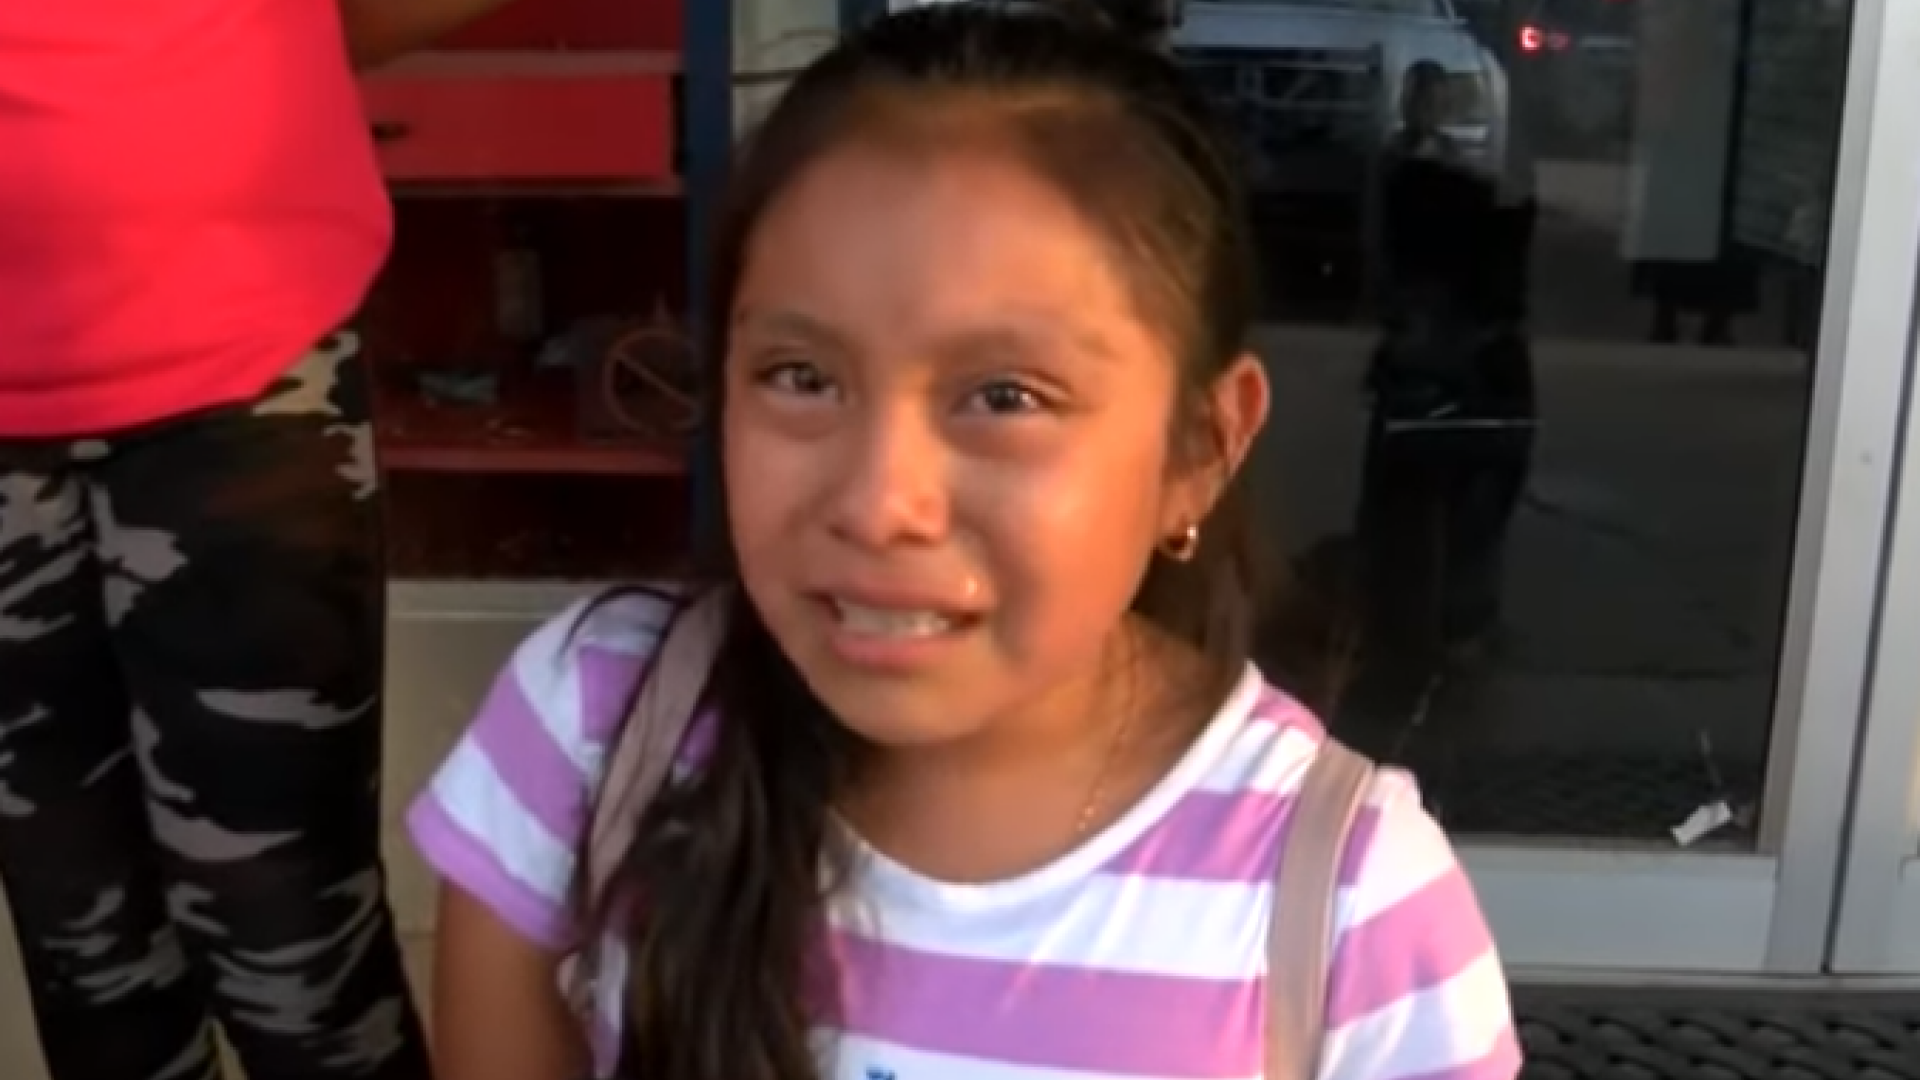 Drama copiilor de migranți din SUA. O fetiță imploră autoritățile să-i elibereze părinții